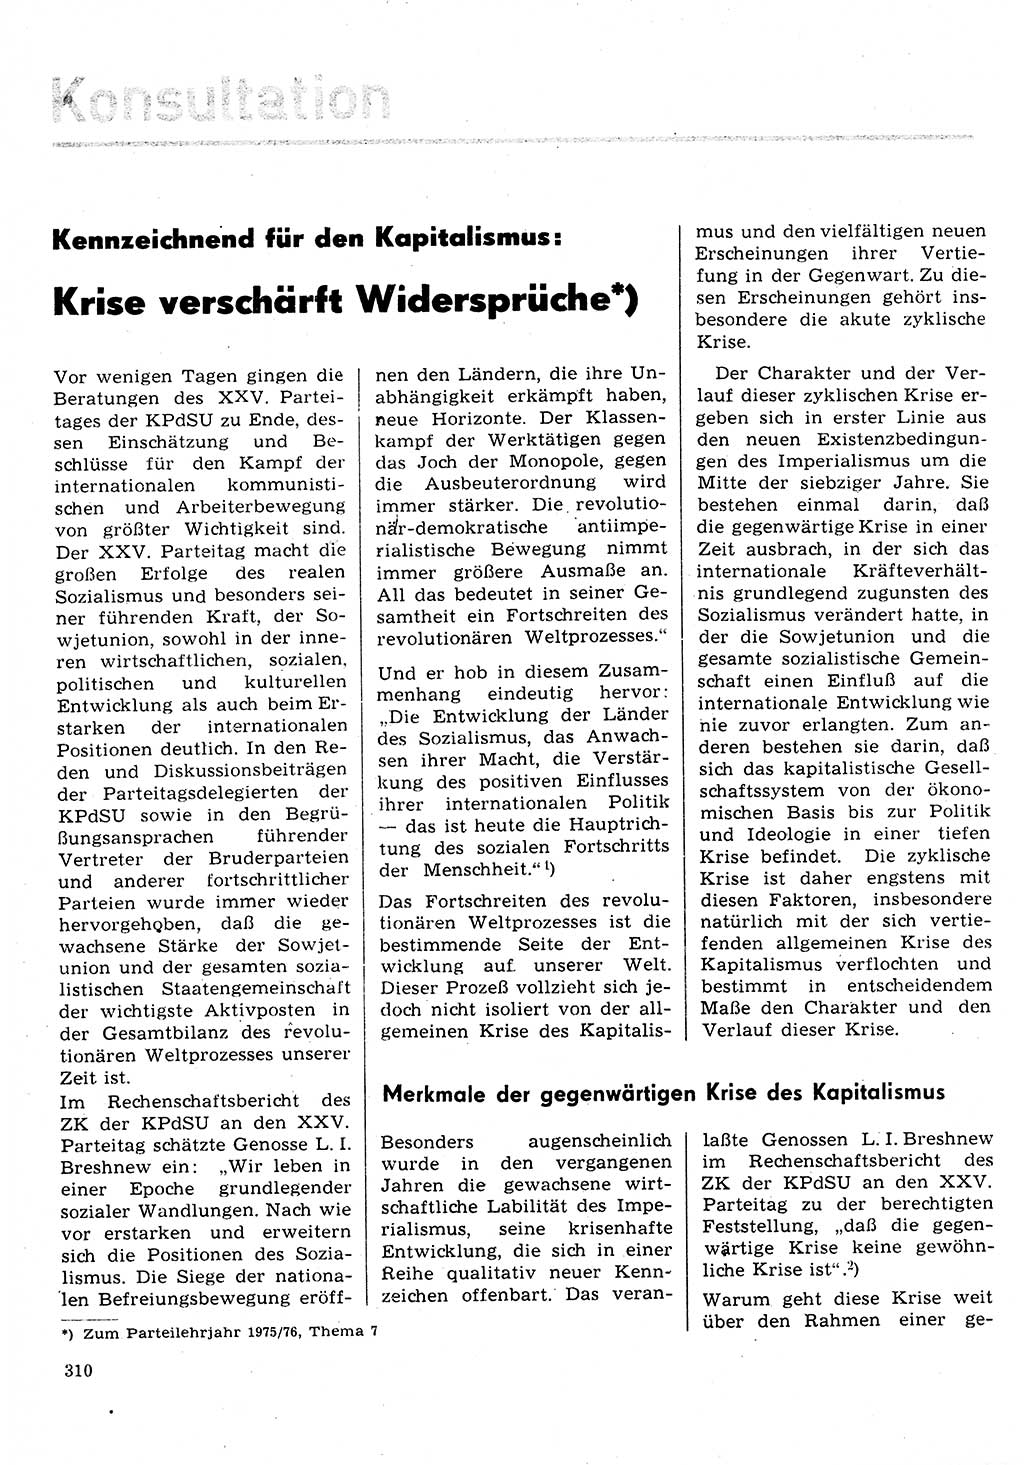 Neuer Weg (NW), Organ des Zentralkomitees (ZK) der SED (Sozialistische Einheitspartei Deutschlands) für Fragen des Parteilebens, 31. Jahrgang [Deutsche Demokratische Republik (DDR)] 1976, Seite 310 (NW ZK SED DDR 1976, S. 310)